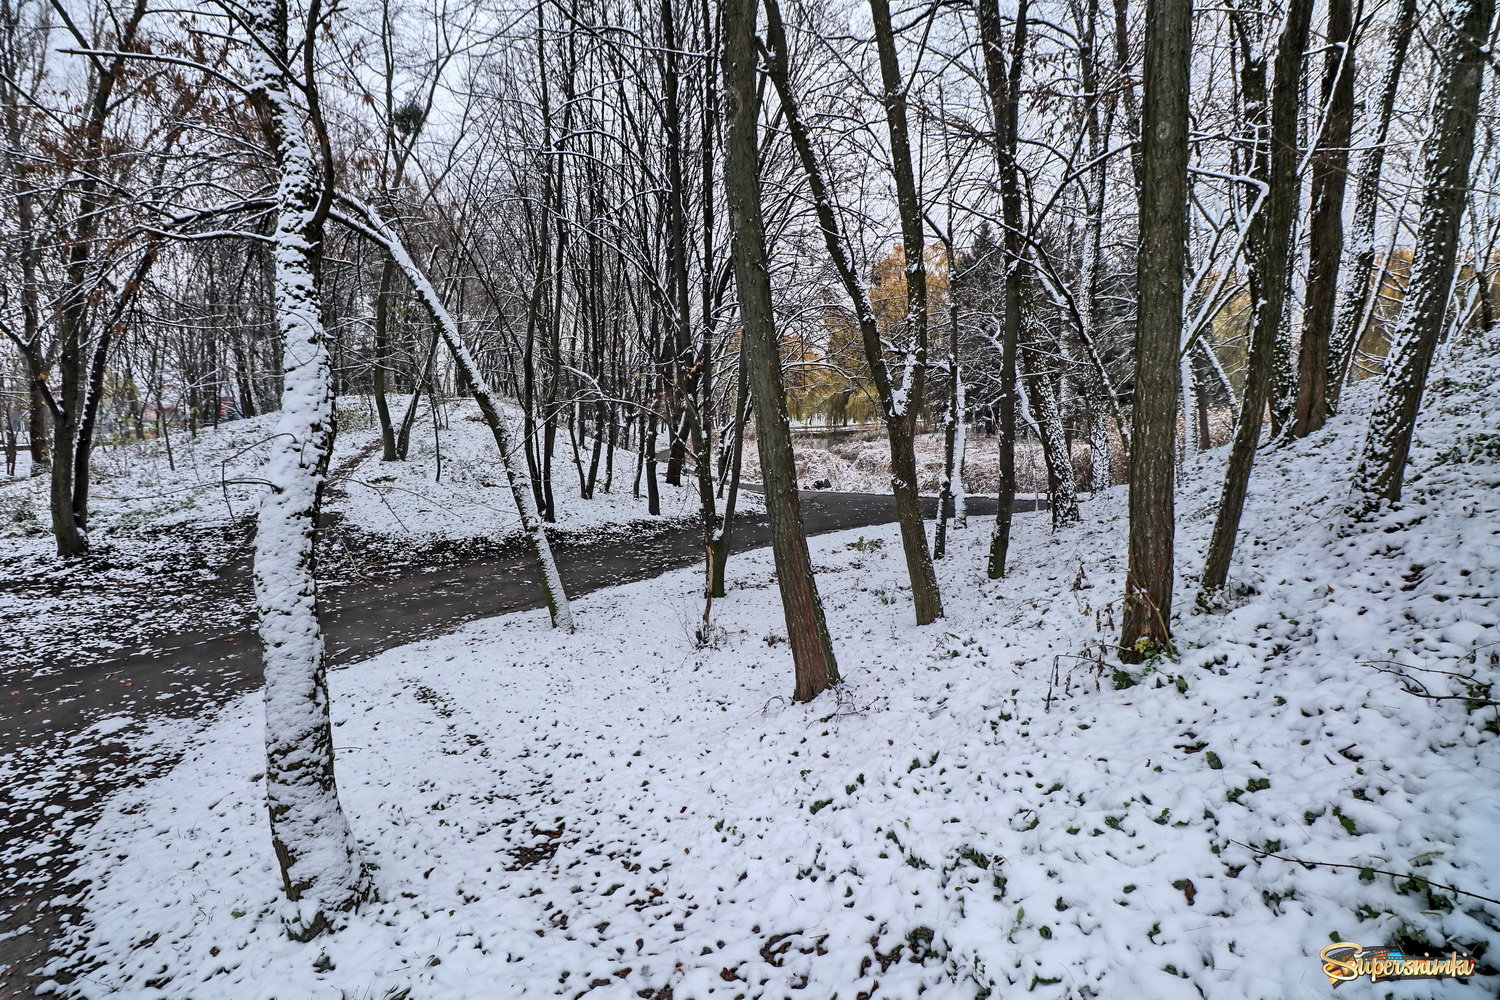  Зима в лесу.